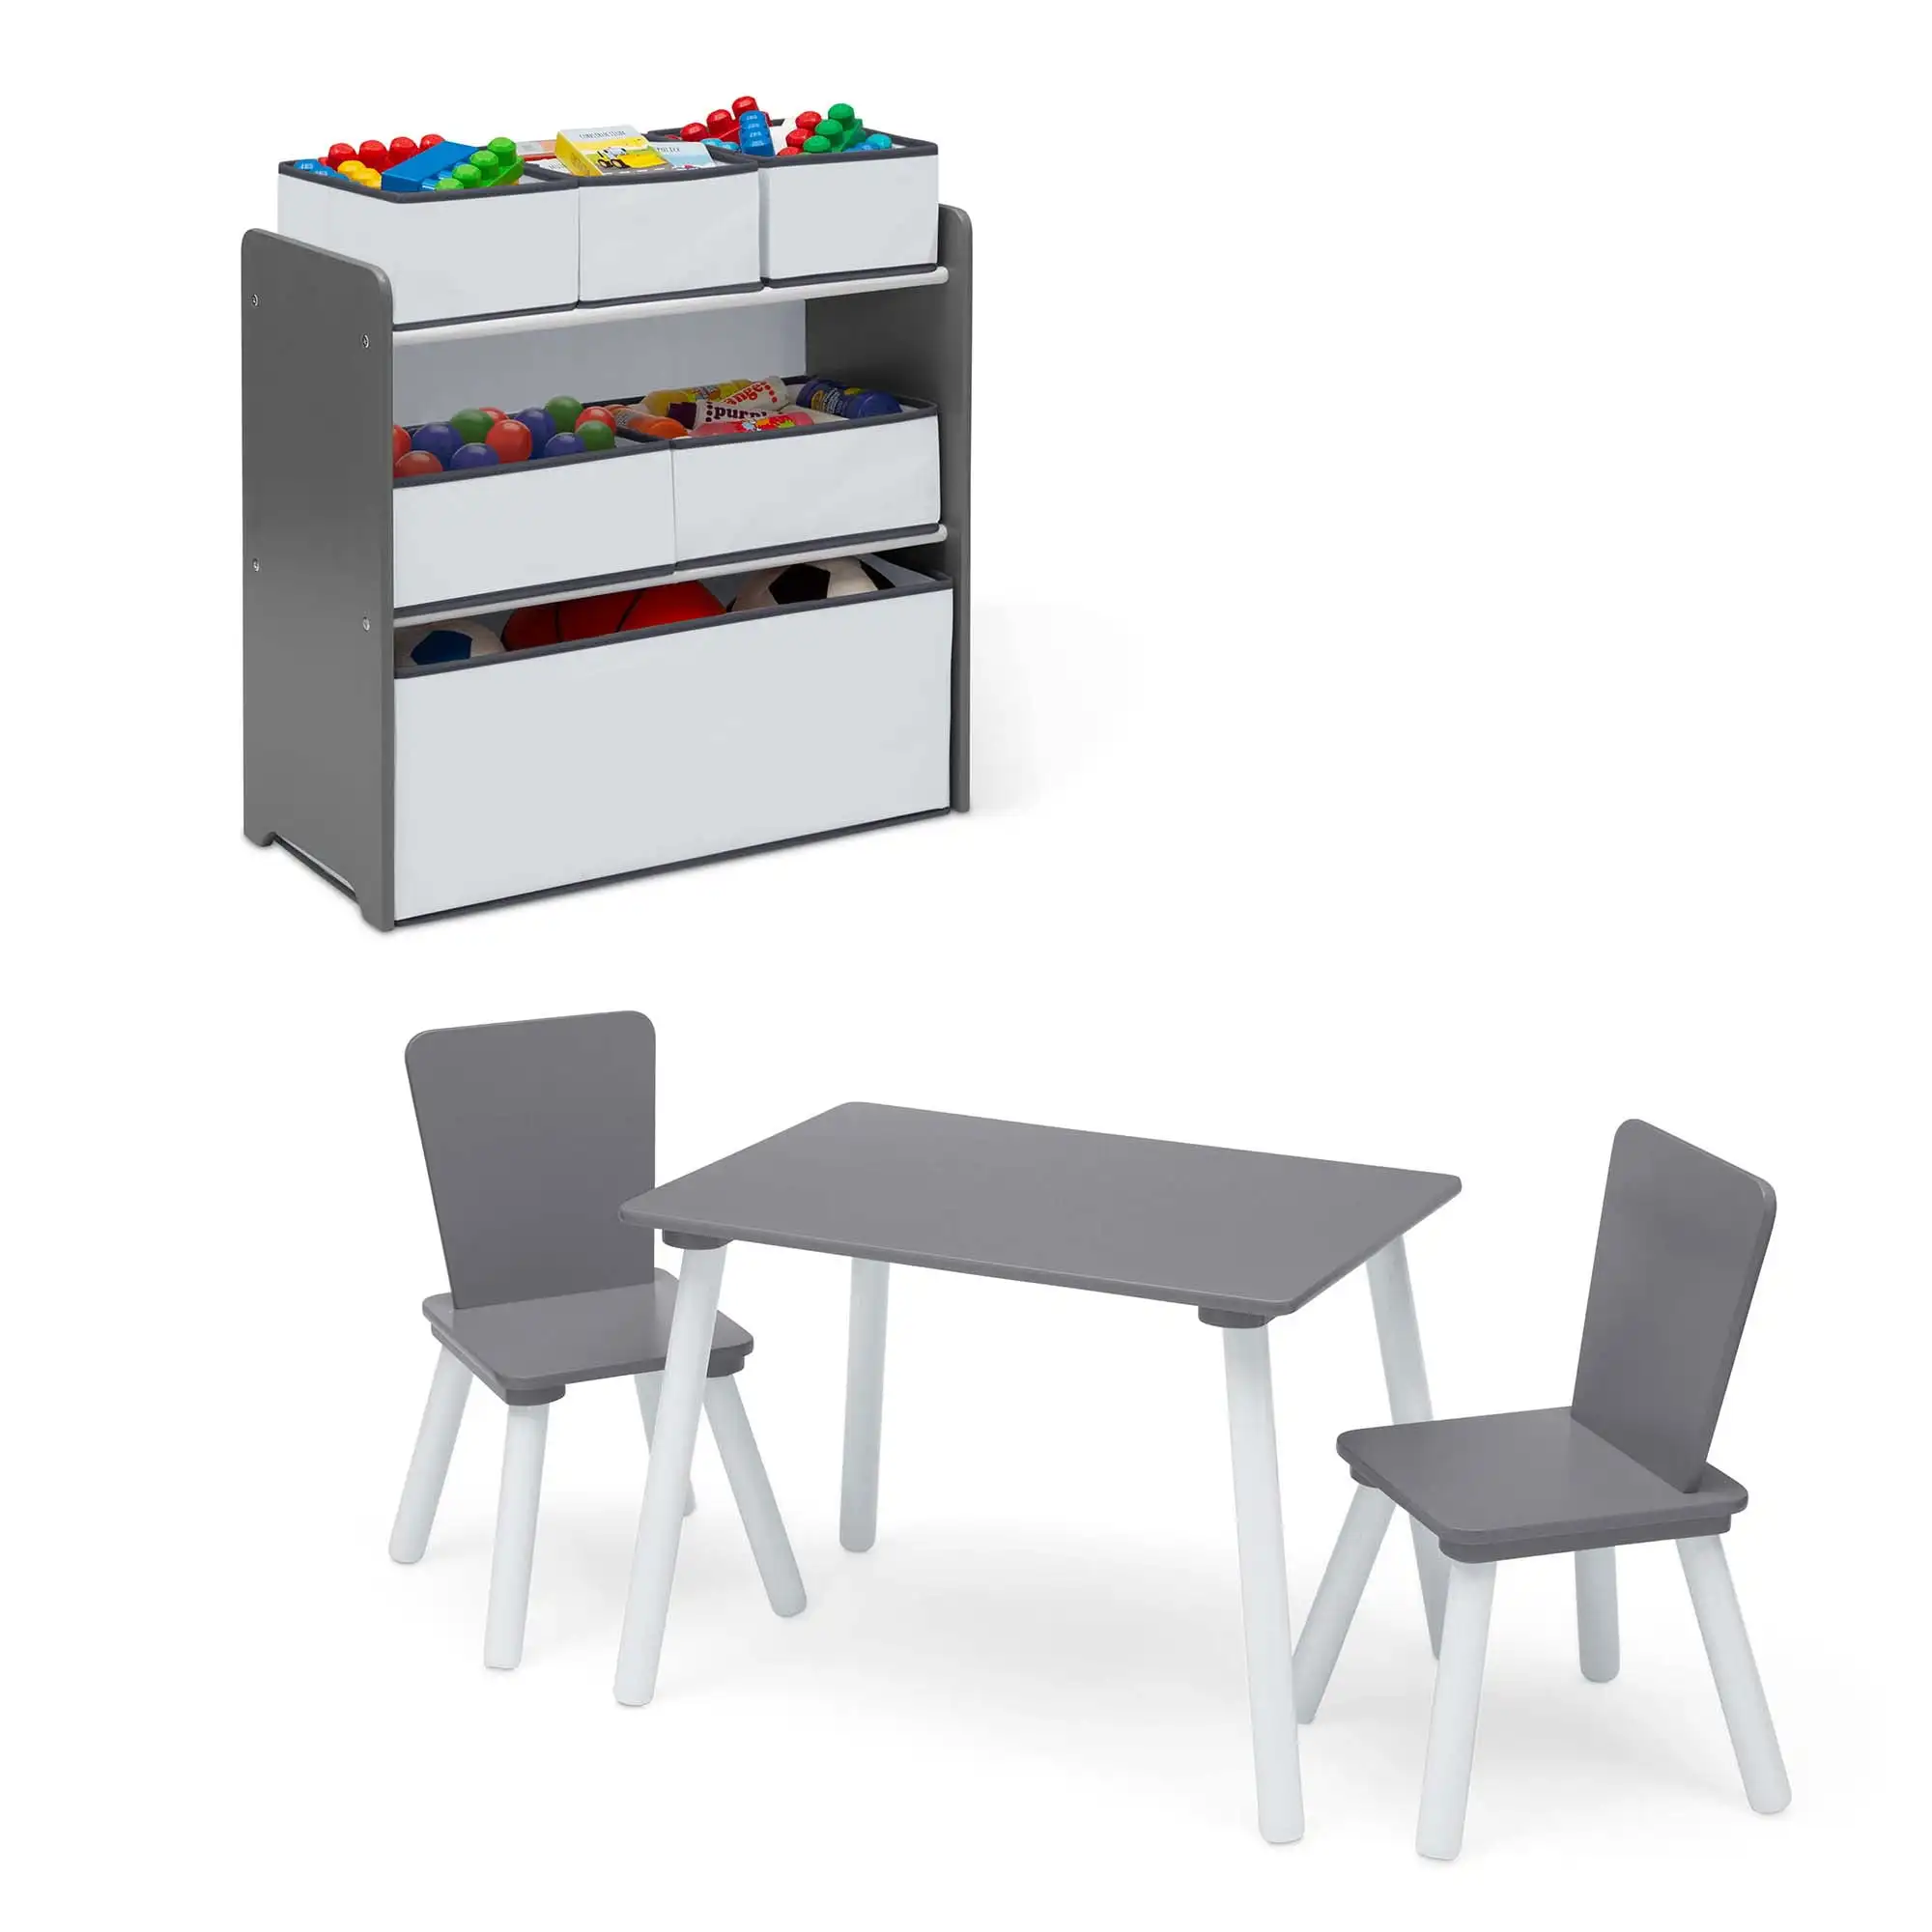 

Детский игровой набор Delta из 4 предметов, включает в себя игровой стол с сухой стираемой столешницей и органайзер для игрушек с 6 корзинами многоразового использования